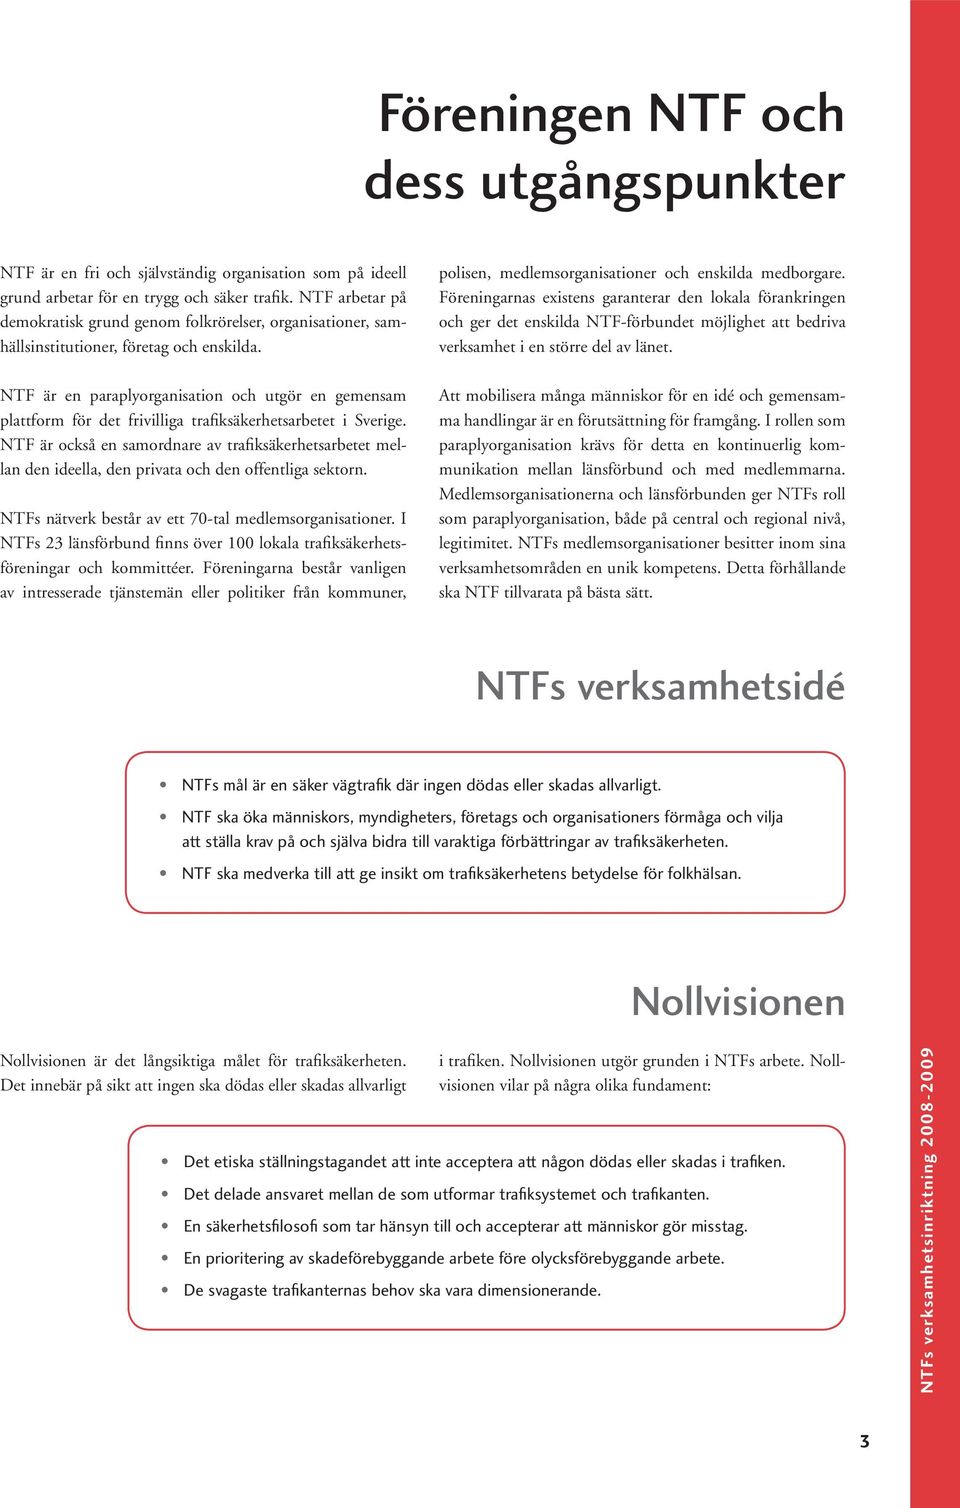 NTF är en paraplyorganisation och utgör en gemensam plattform för det frivilliga trafiksäkerhetsarbetet i Sverige.